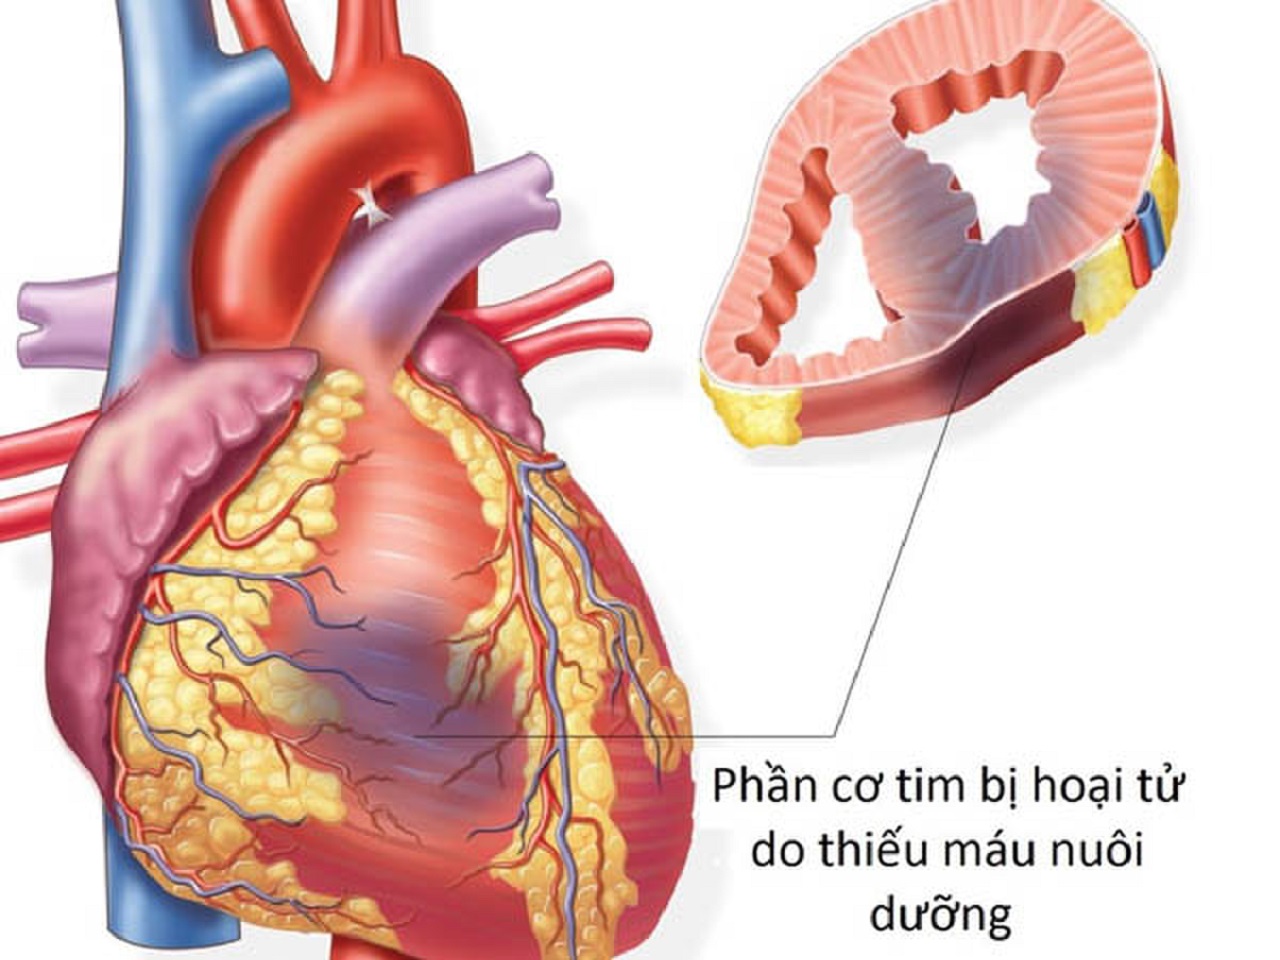 Những dấu hiệu và nguyên nhân nhồi máu cơ tim thành dưới cần được biết